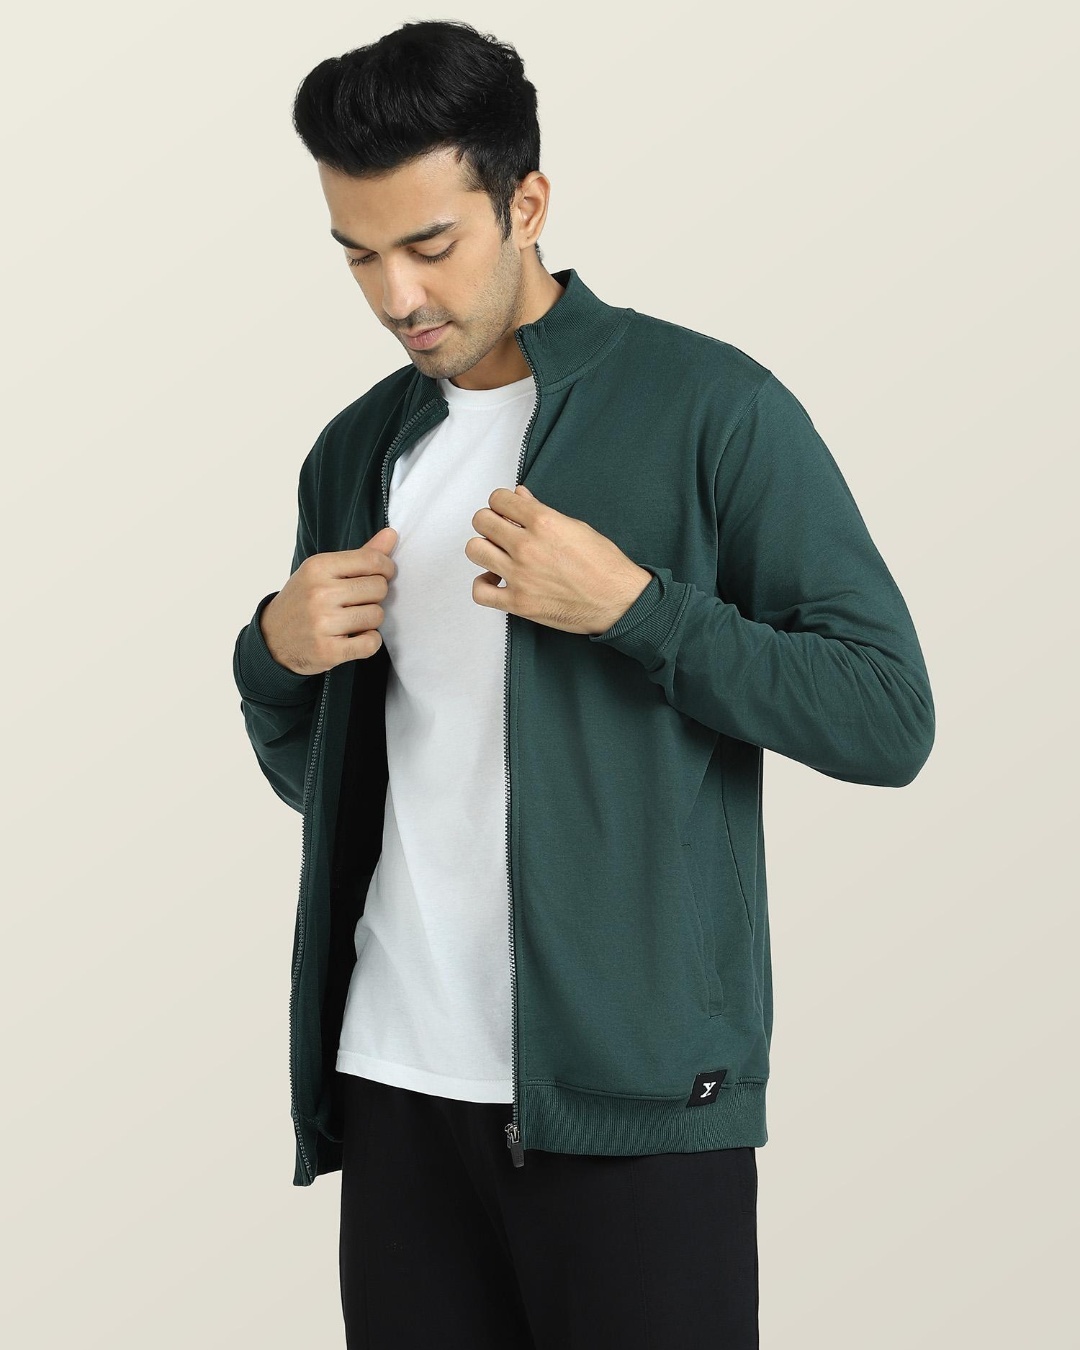 Buy Men's Green Jacket Online at Bewakoof